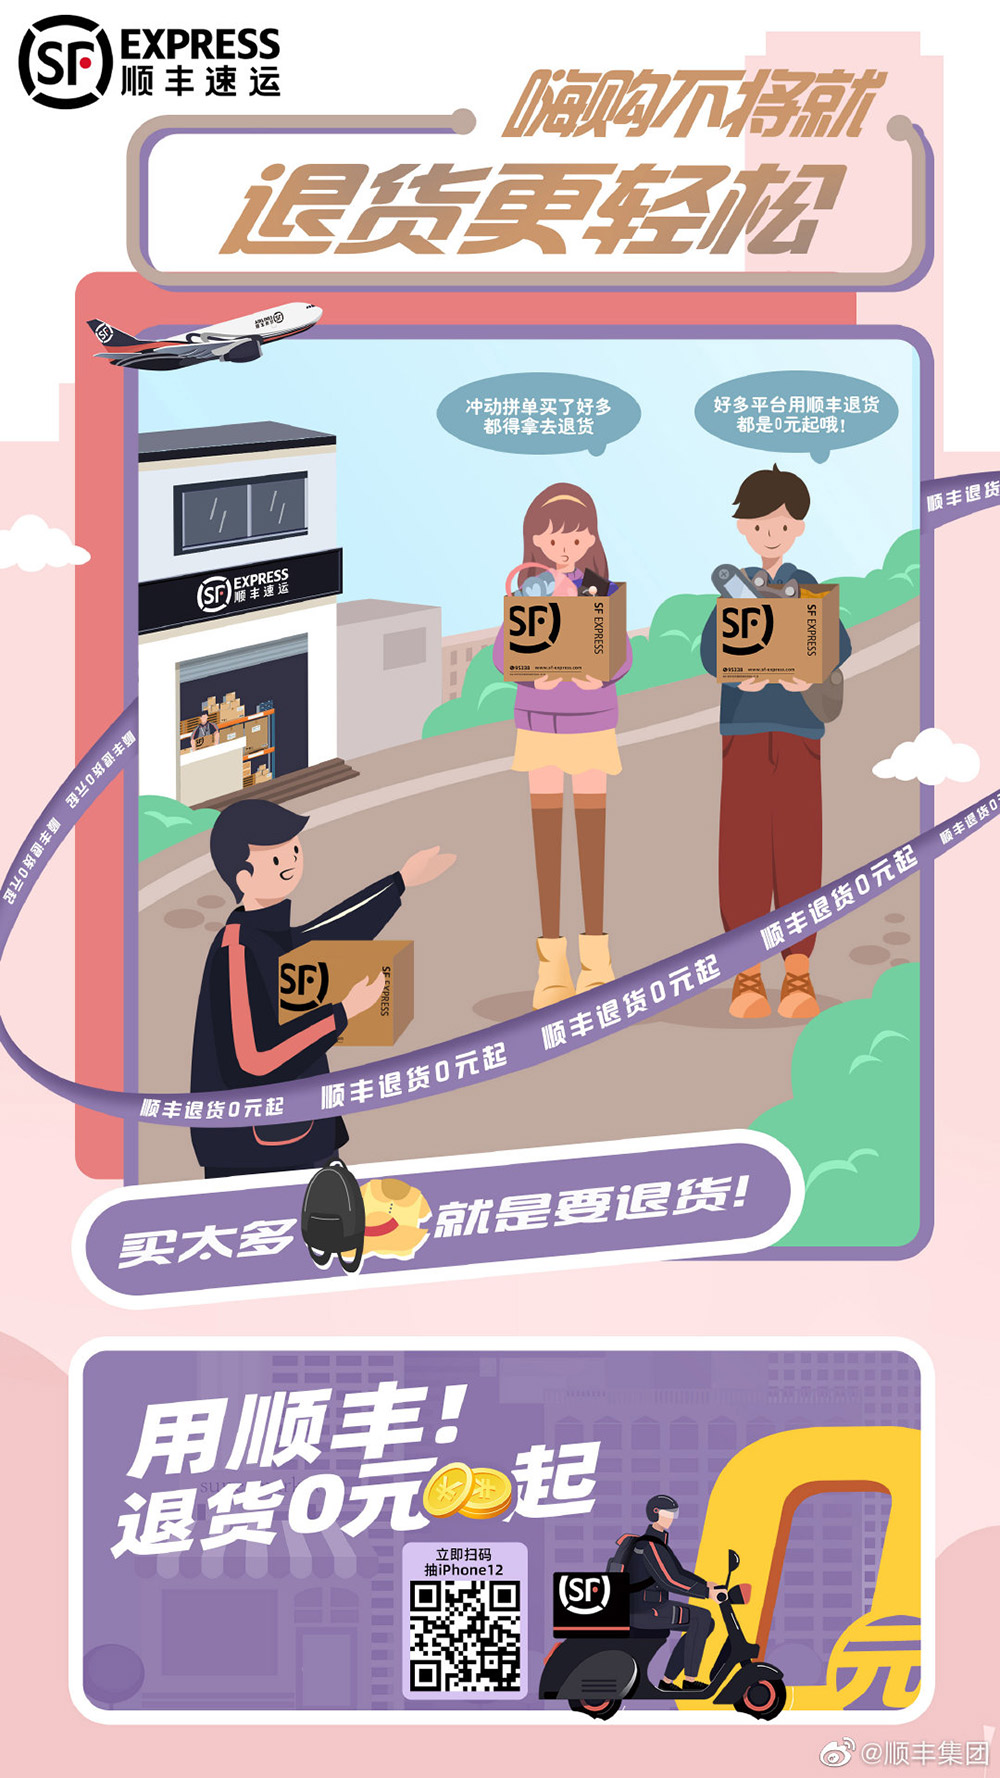 15张顺丰集团的插画营销海报